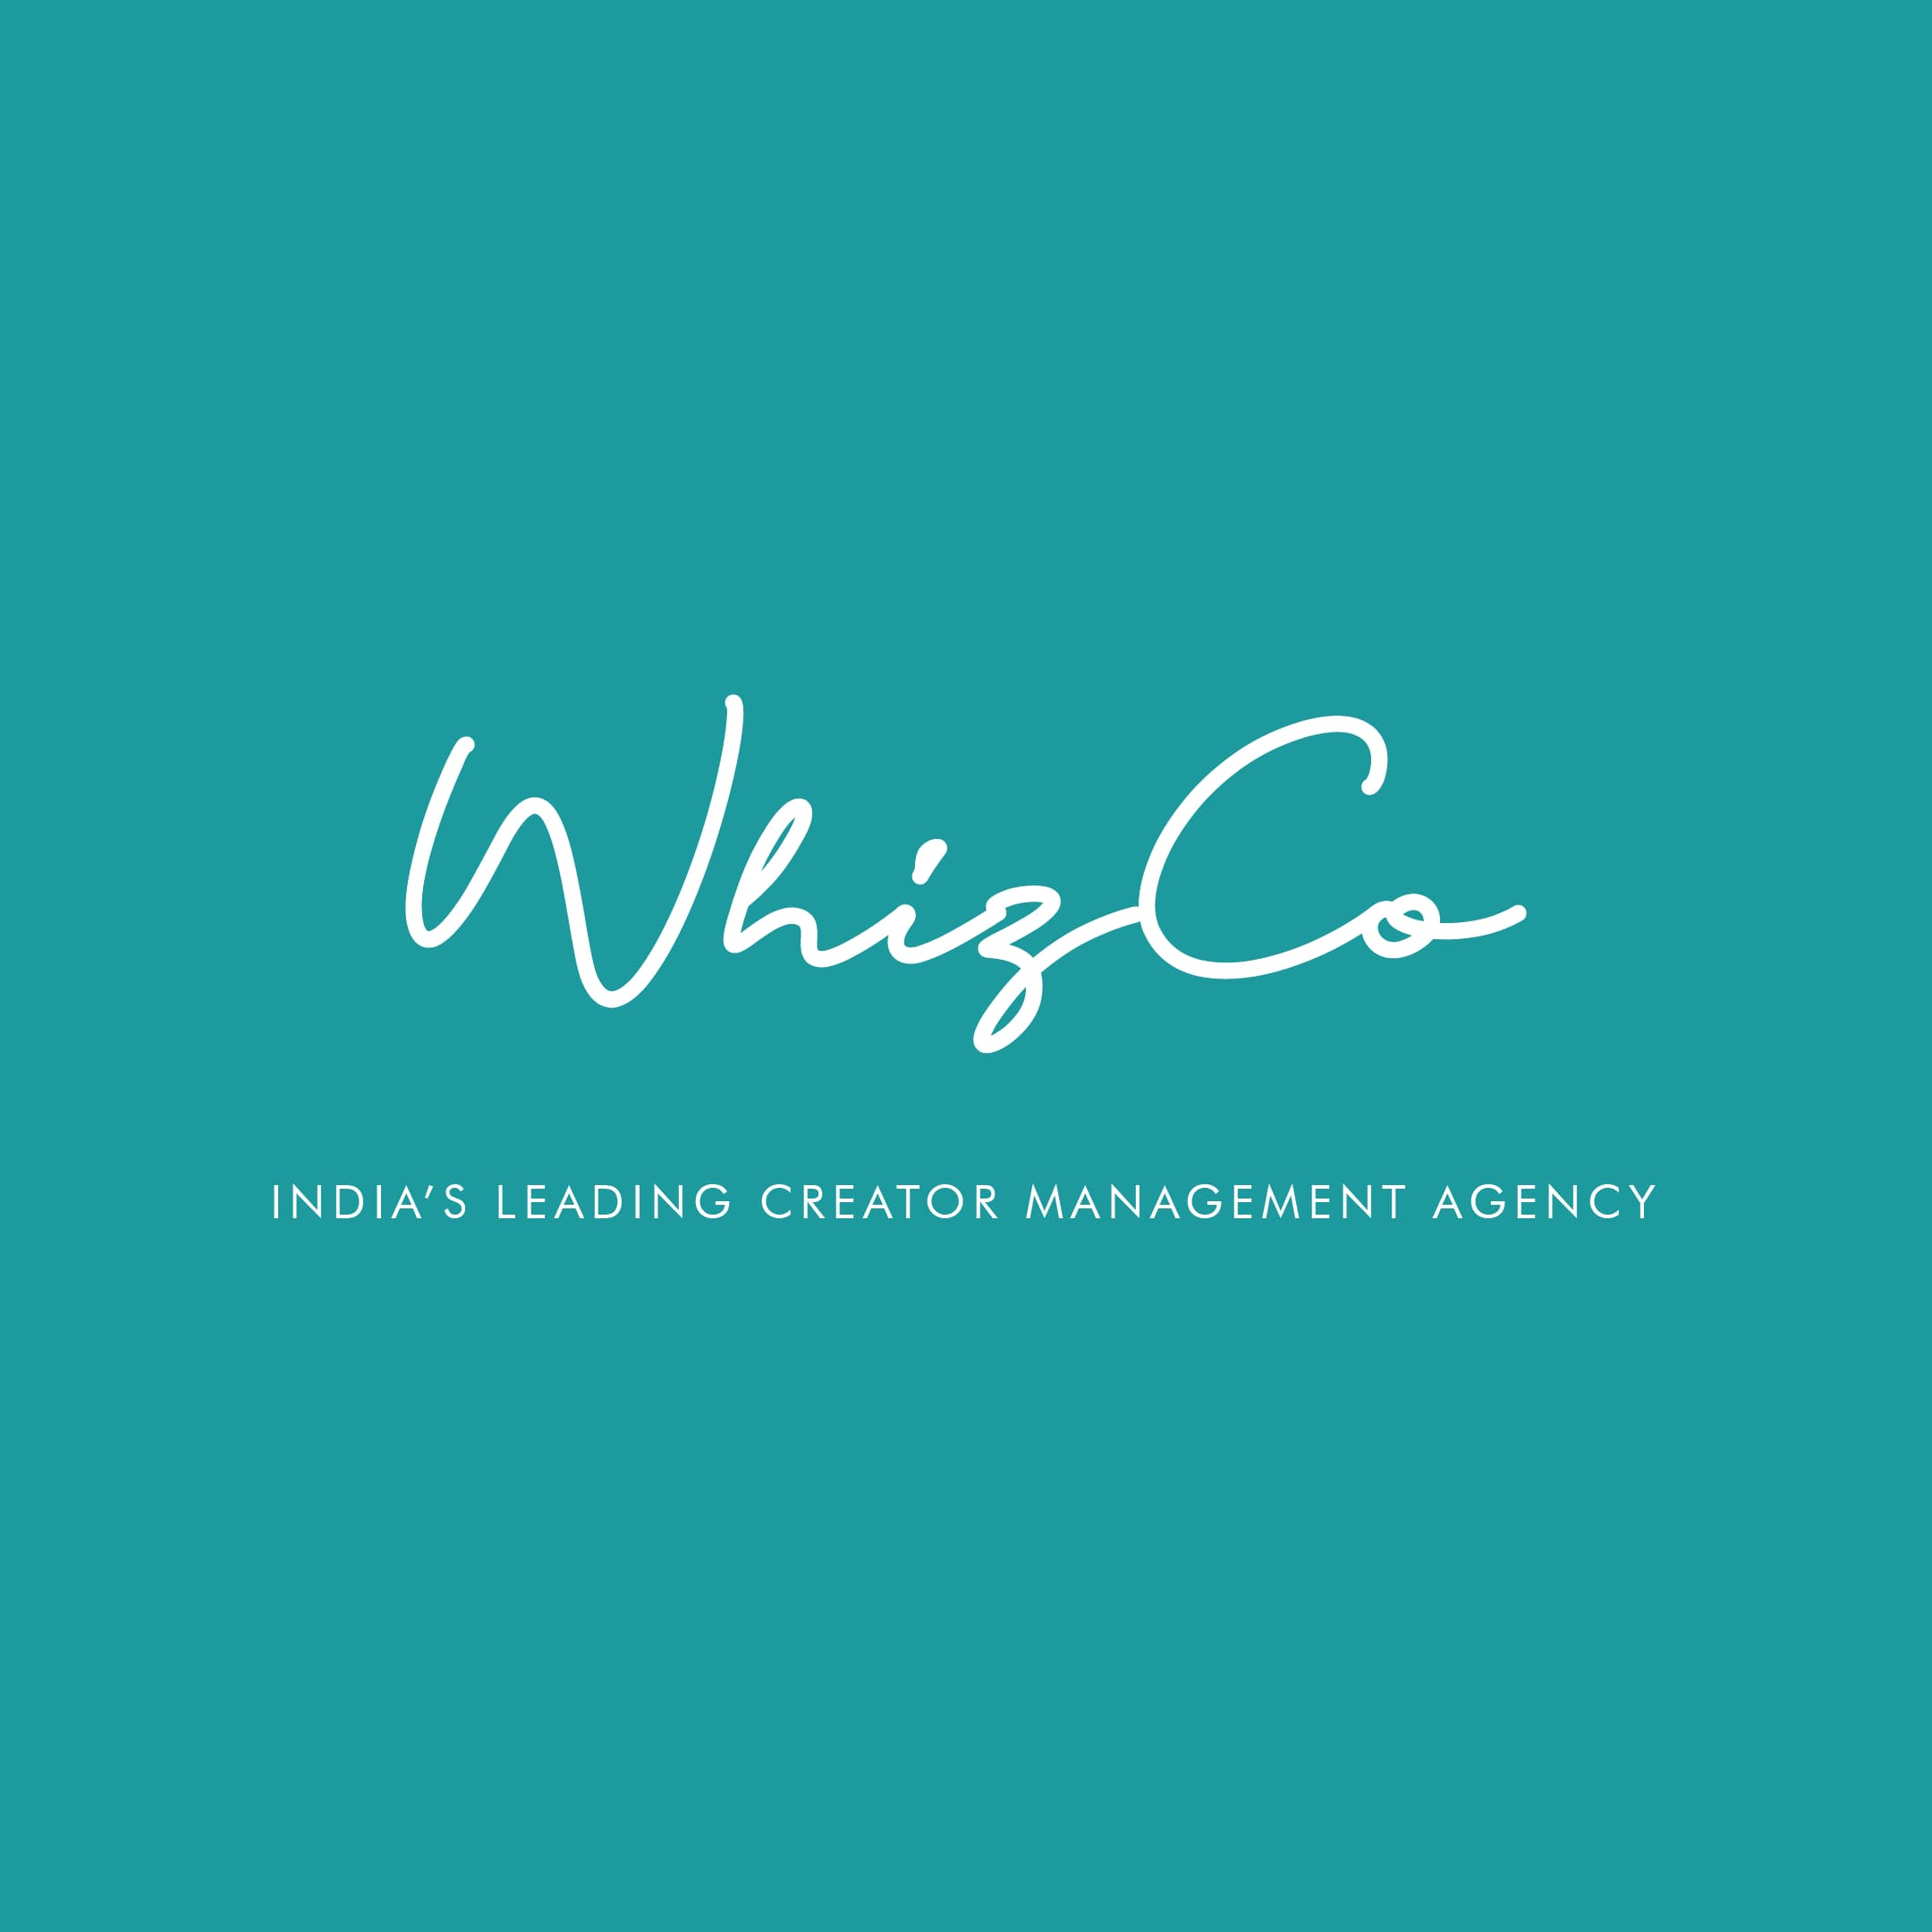 WhizCo's logo